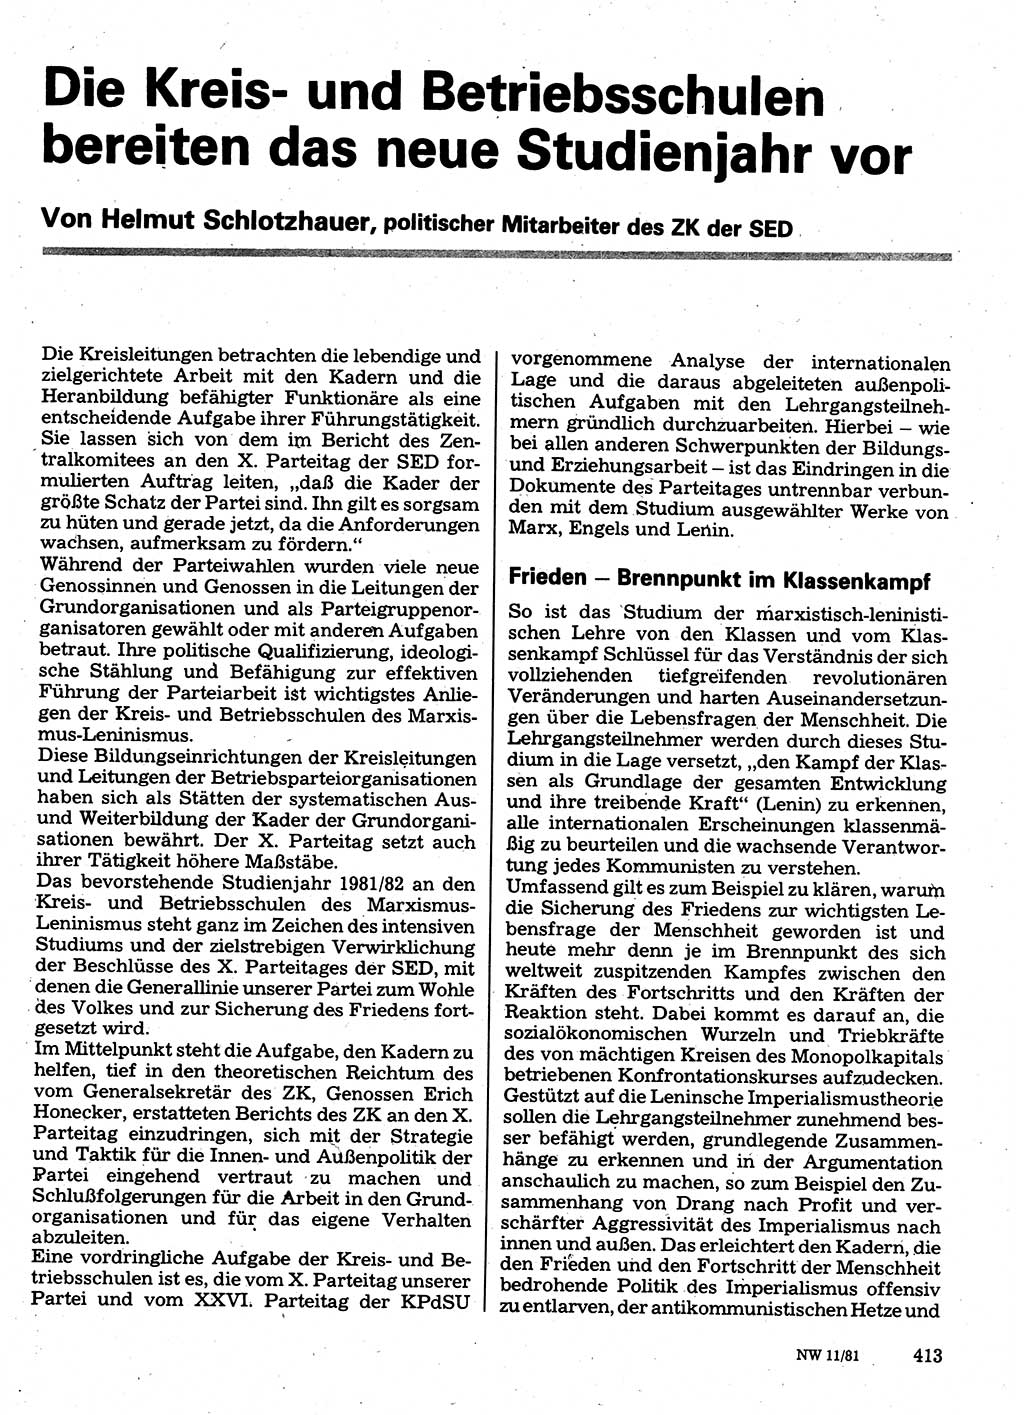 Neuer Weg (NW), Organ des Zentralkomitees (ZK) der SED (Sozialistische Einheitspartei Deutschlands) für Fragen des Parteilebens, 36. Jahrgang [Deutsche Demokratische Republik (DDR)] 1981, Seite 413 (NW ZK SED DDR 1981, S. 413)